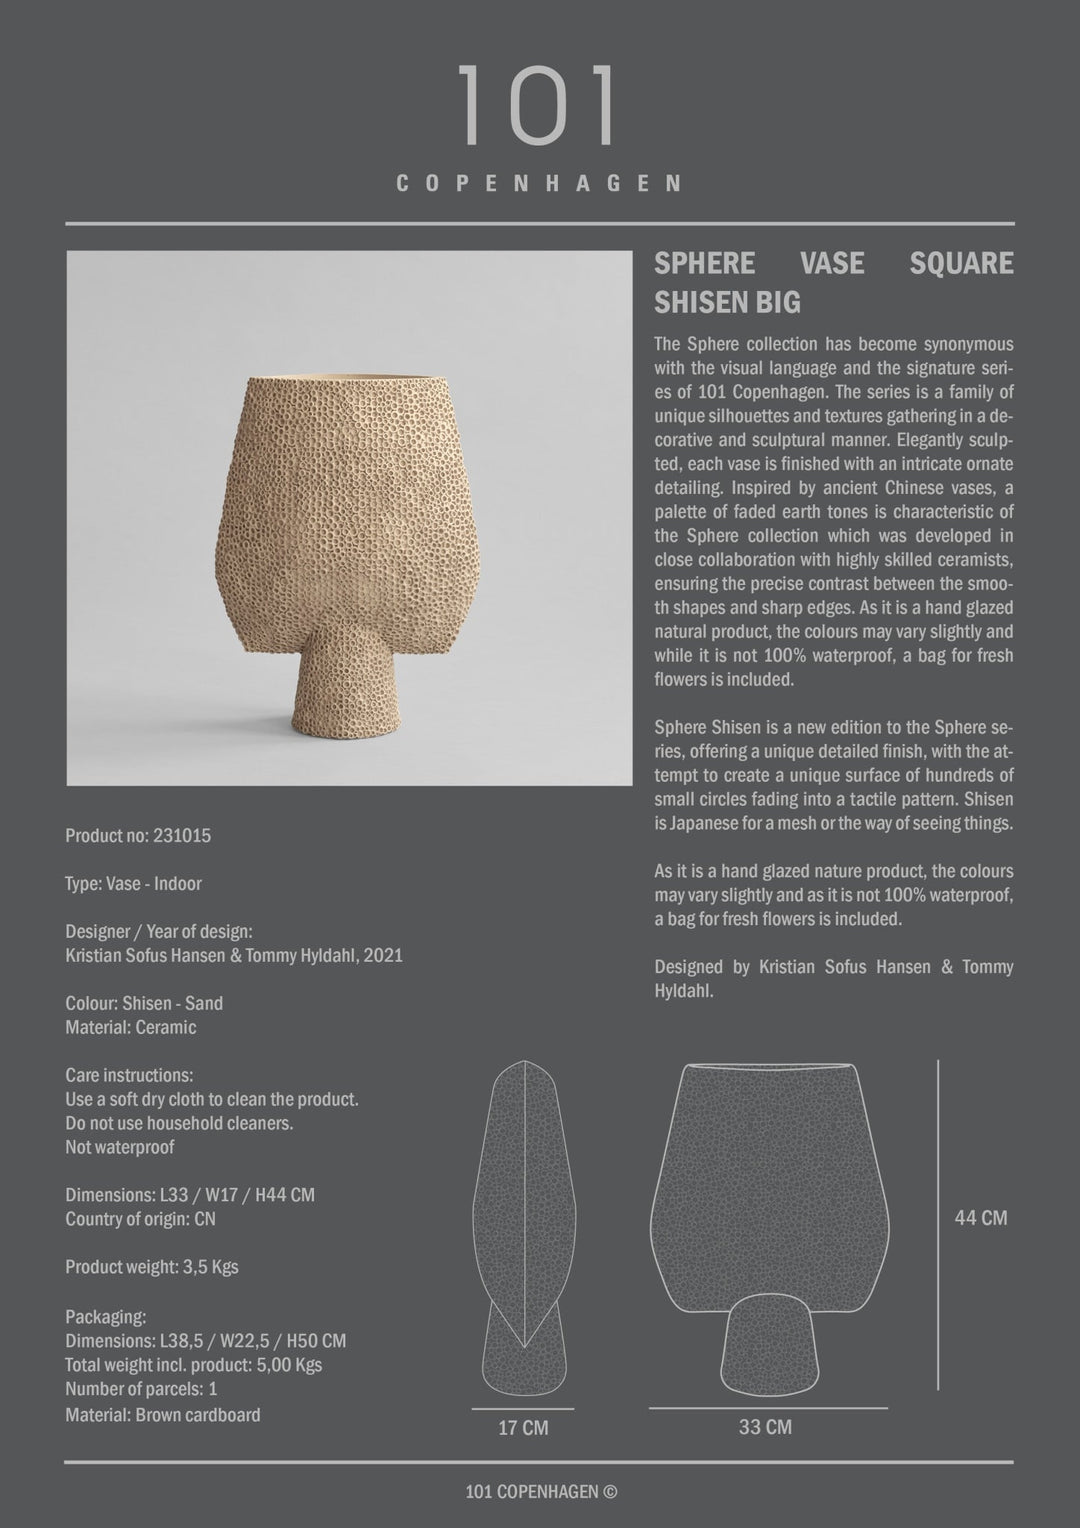 101 Copenhagen Sphere Vase Square Shisen - $115.00 - $295.00